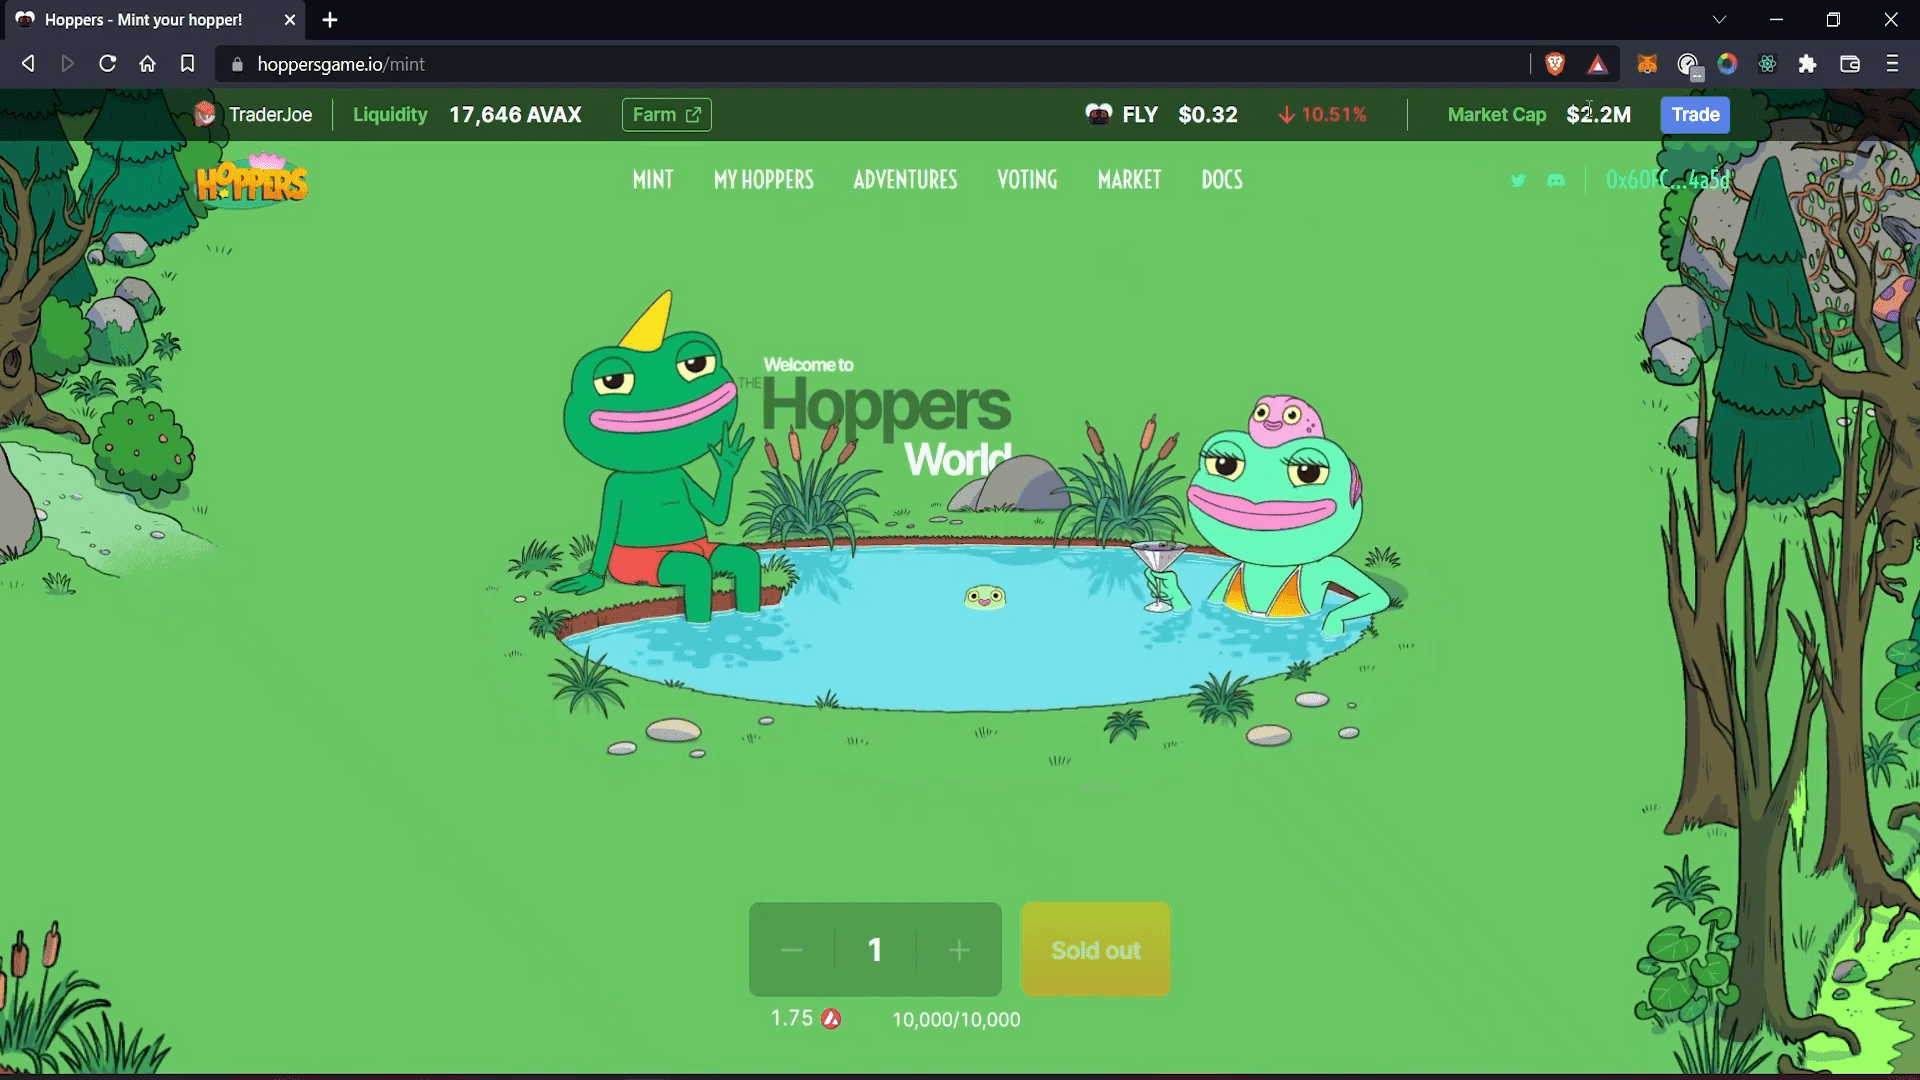 Hoppers Game NFT Game Hoppers Game ist ein Idle-Spiel, bei dem Spieler ihre Hopper NFTs in verschiedenen Abenteuern einsetzen, um $FLY zu verdienen.